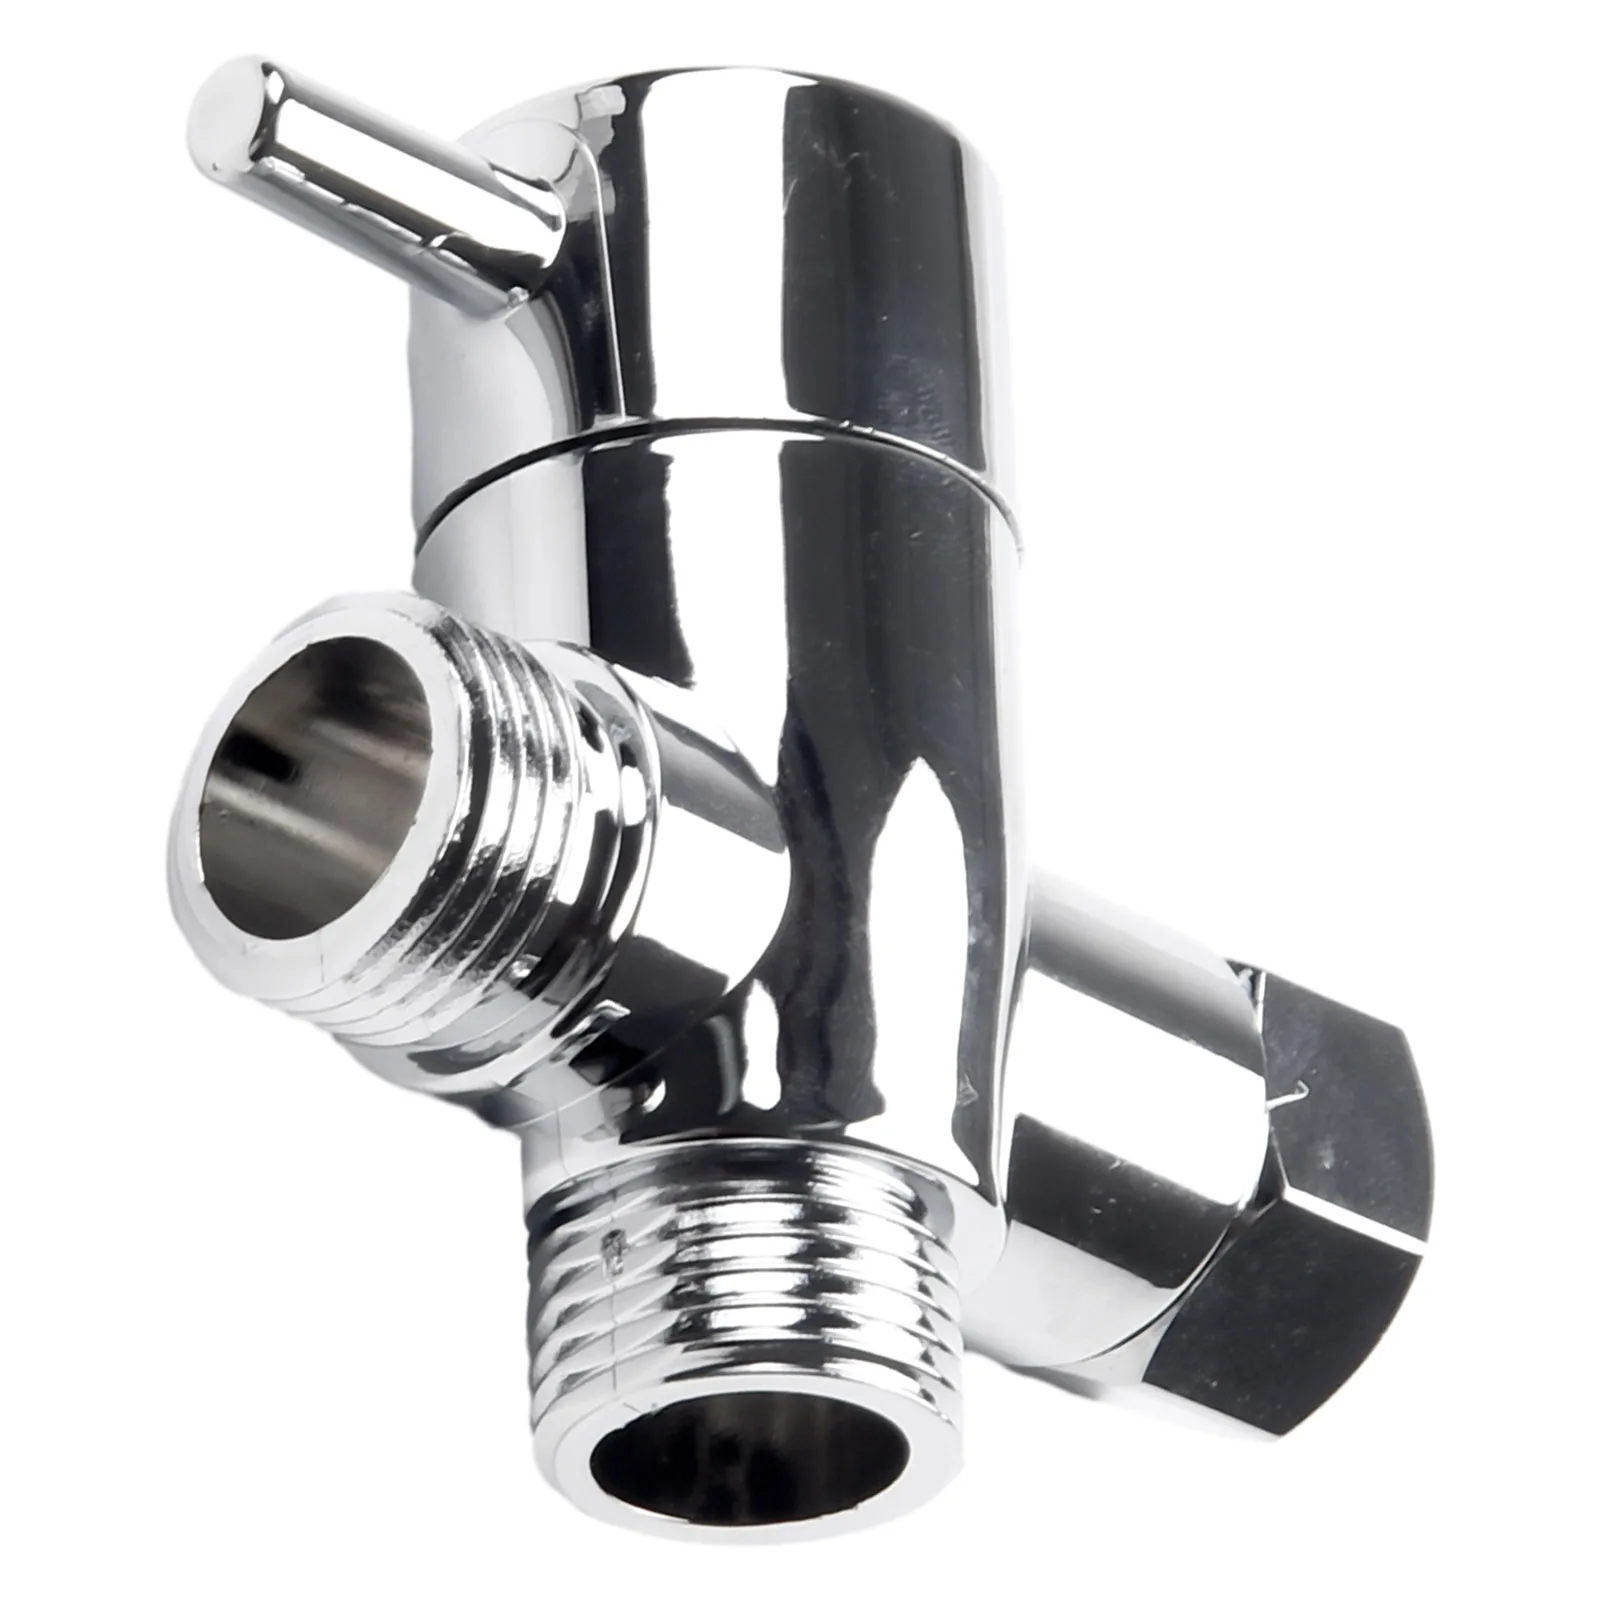 

1pc 3 Way T-adapter Brass G1/2 Inch Tee Connector With Shut Off Valve Shower Diverter For Bath Toilet Bidet Sprayer Shower Head